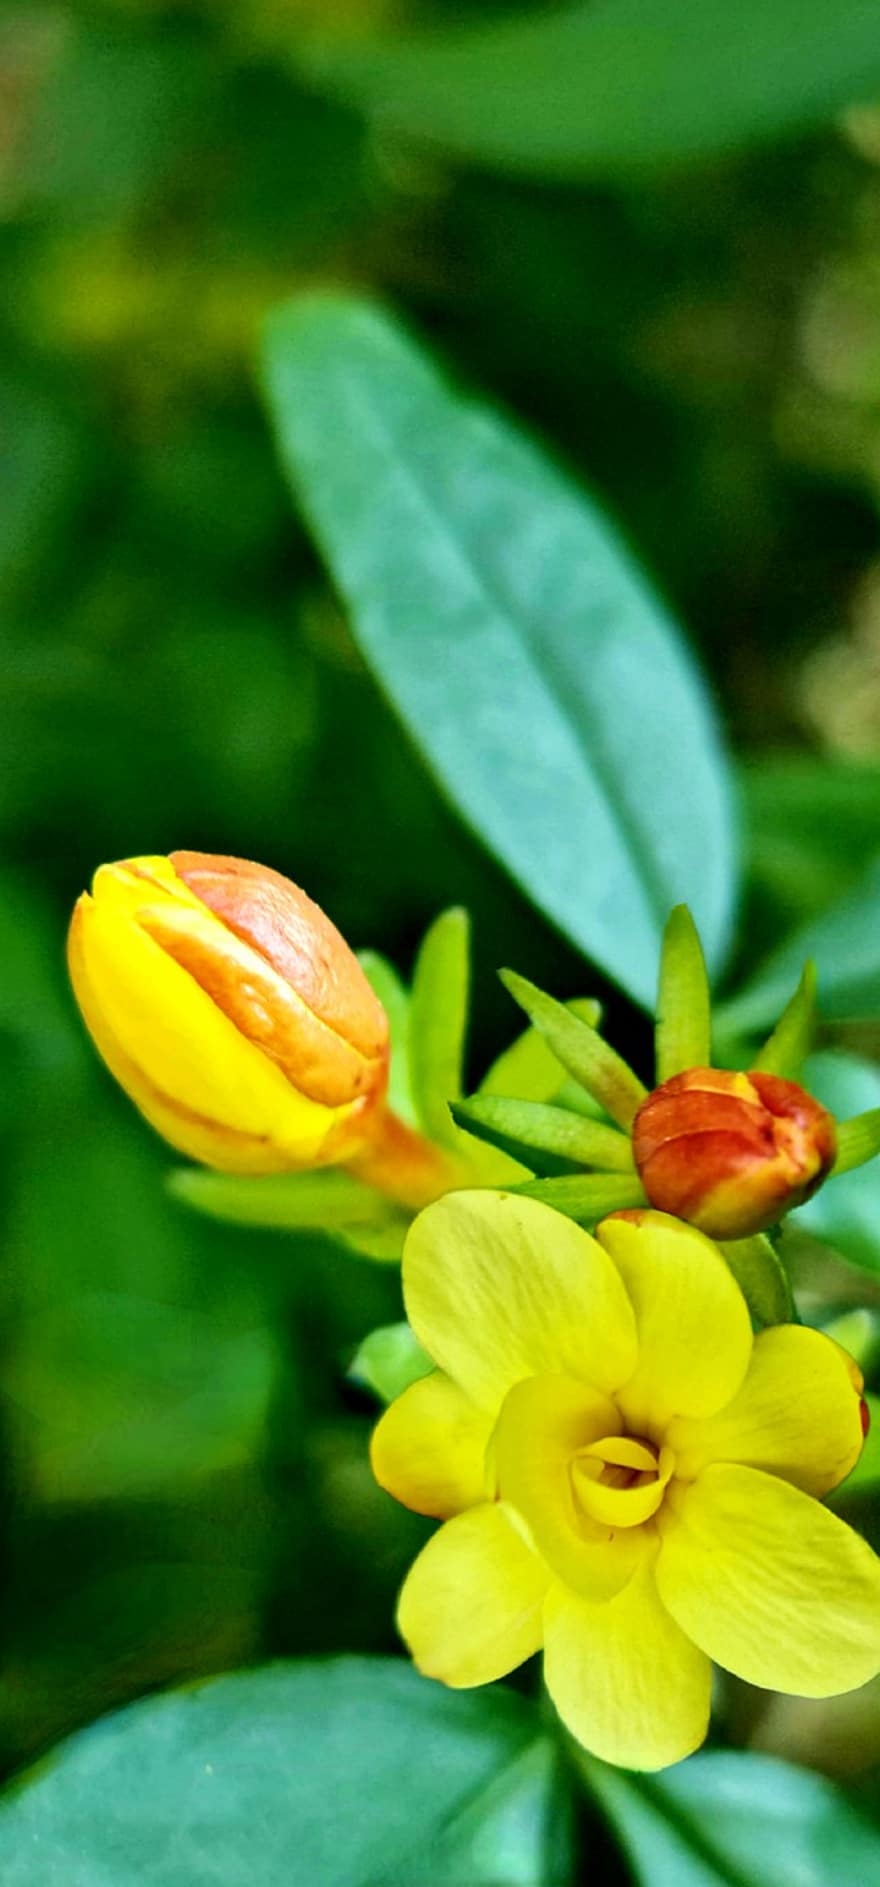 Winter Jasmine, Flower, Plant, Petals, Bloom, Flora, Spring, Nature, leaf, close-up, green color